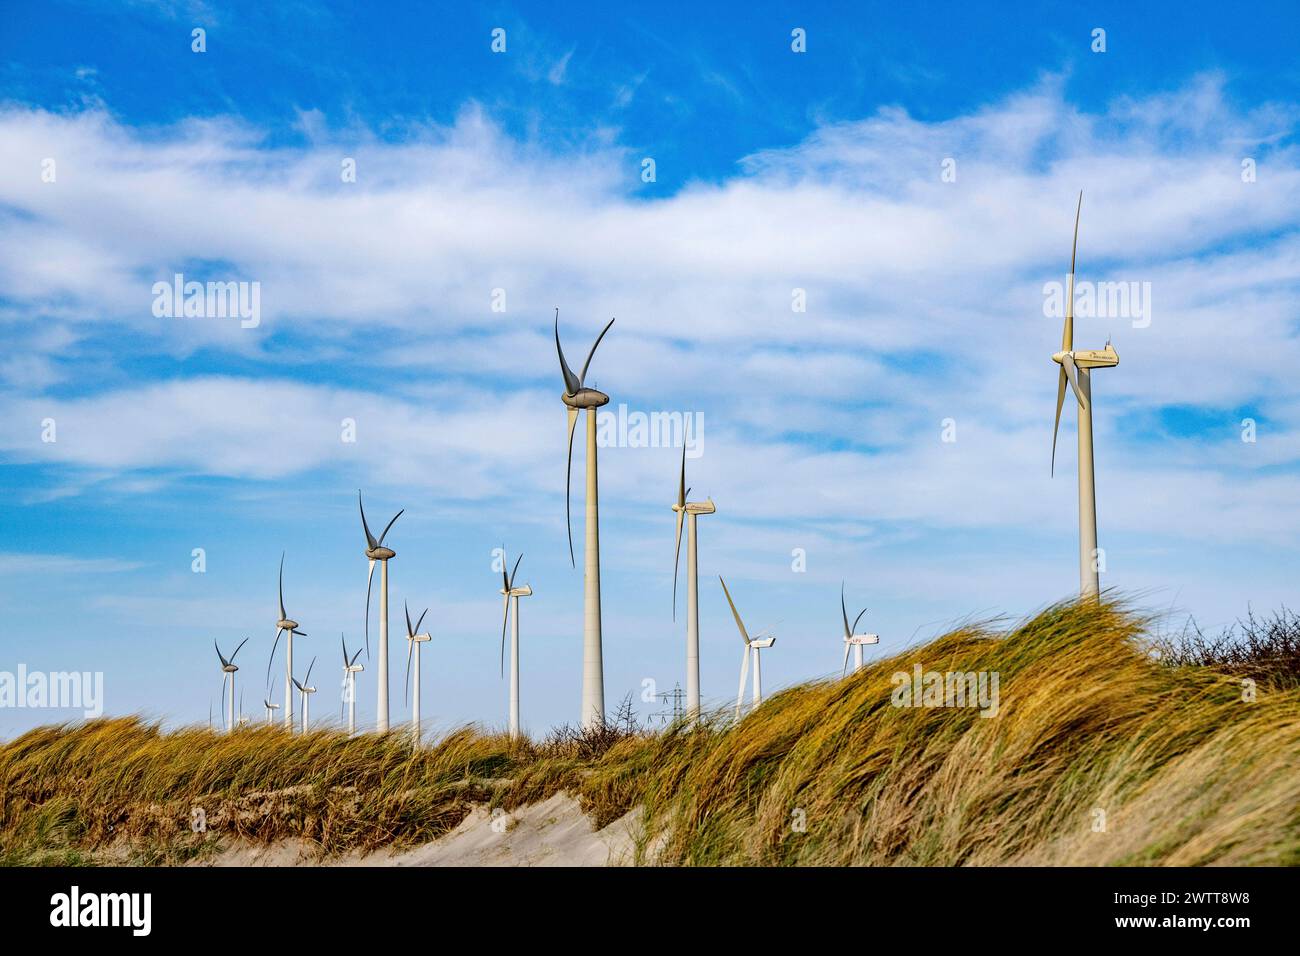 Windmühlen sind Windmühlen, die die kinetische Energie der Luft in Rotationsenergie der Rotorblätter umwandeln, die dann sinnvoll genutzt werden kann, beispielsweise zur Stromerzeugung. Stockfoto